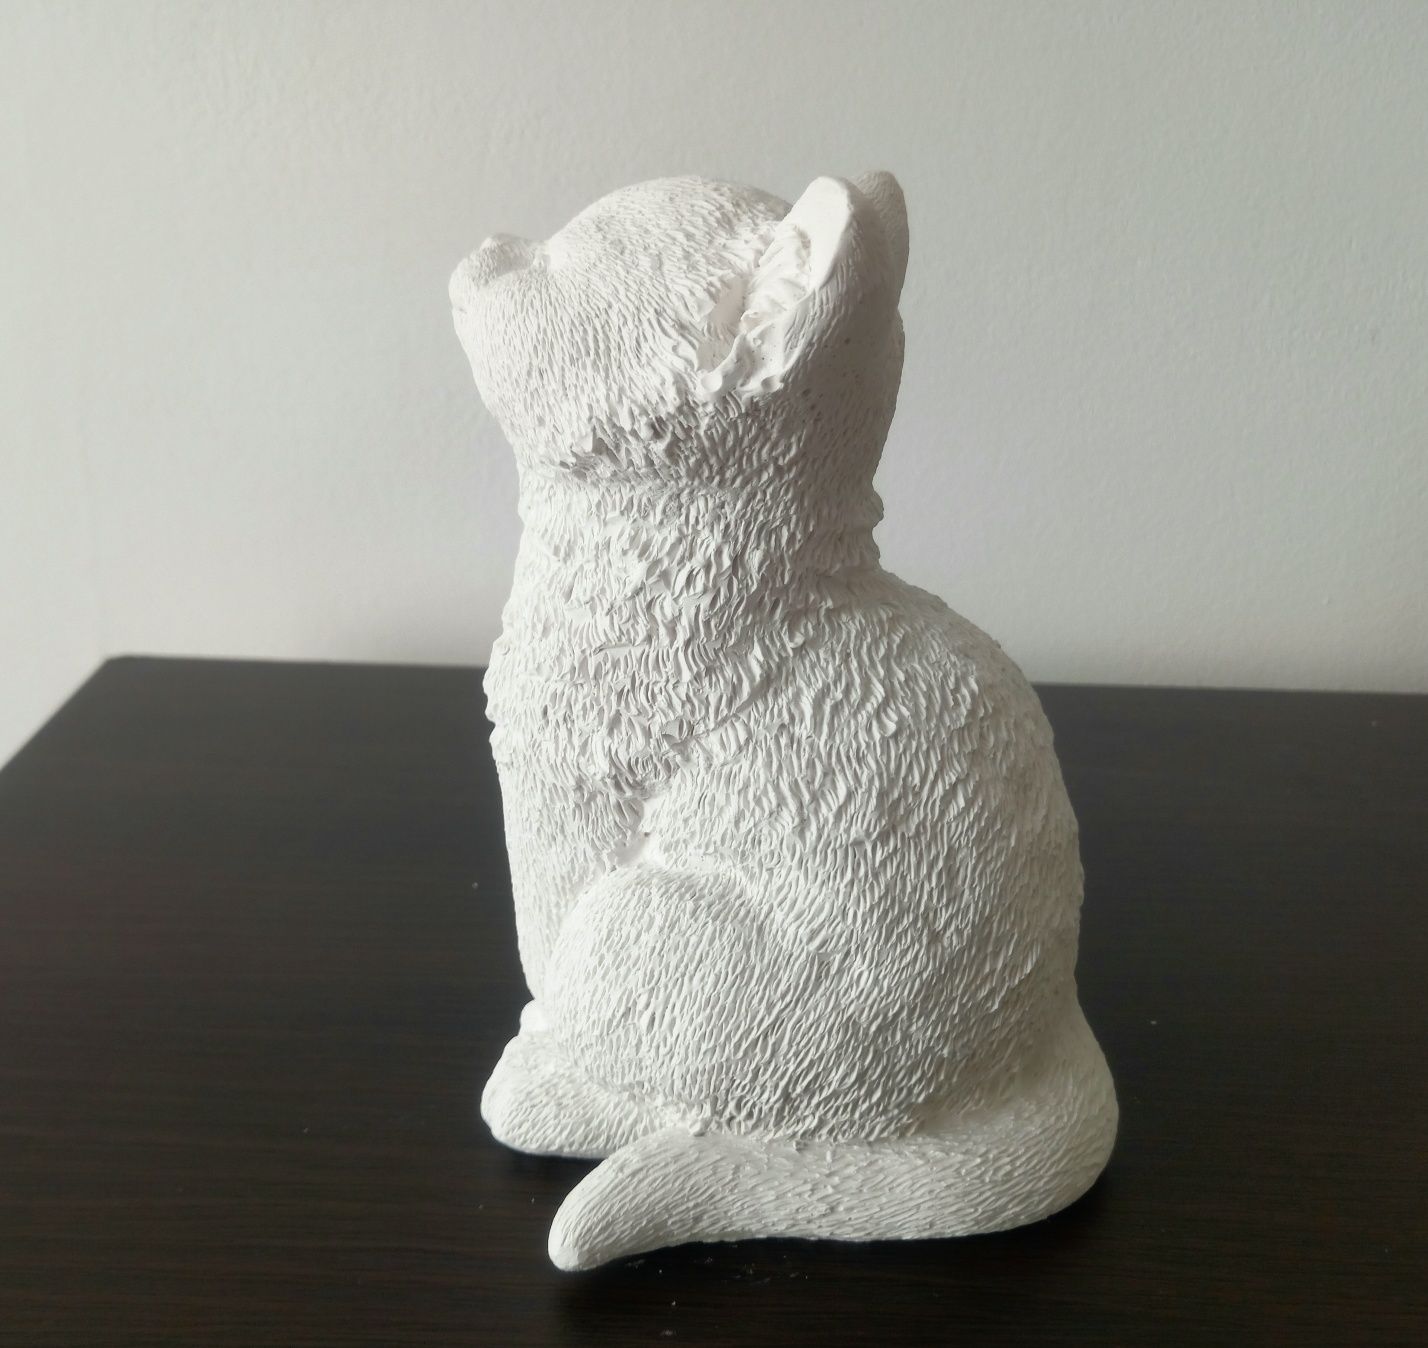 Kot z gipsu ceramicznego Siedzący kot Figurka